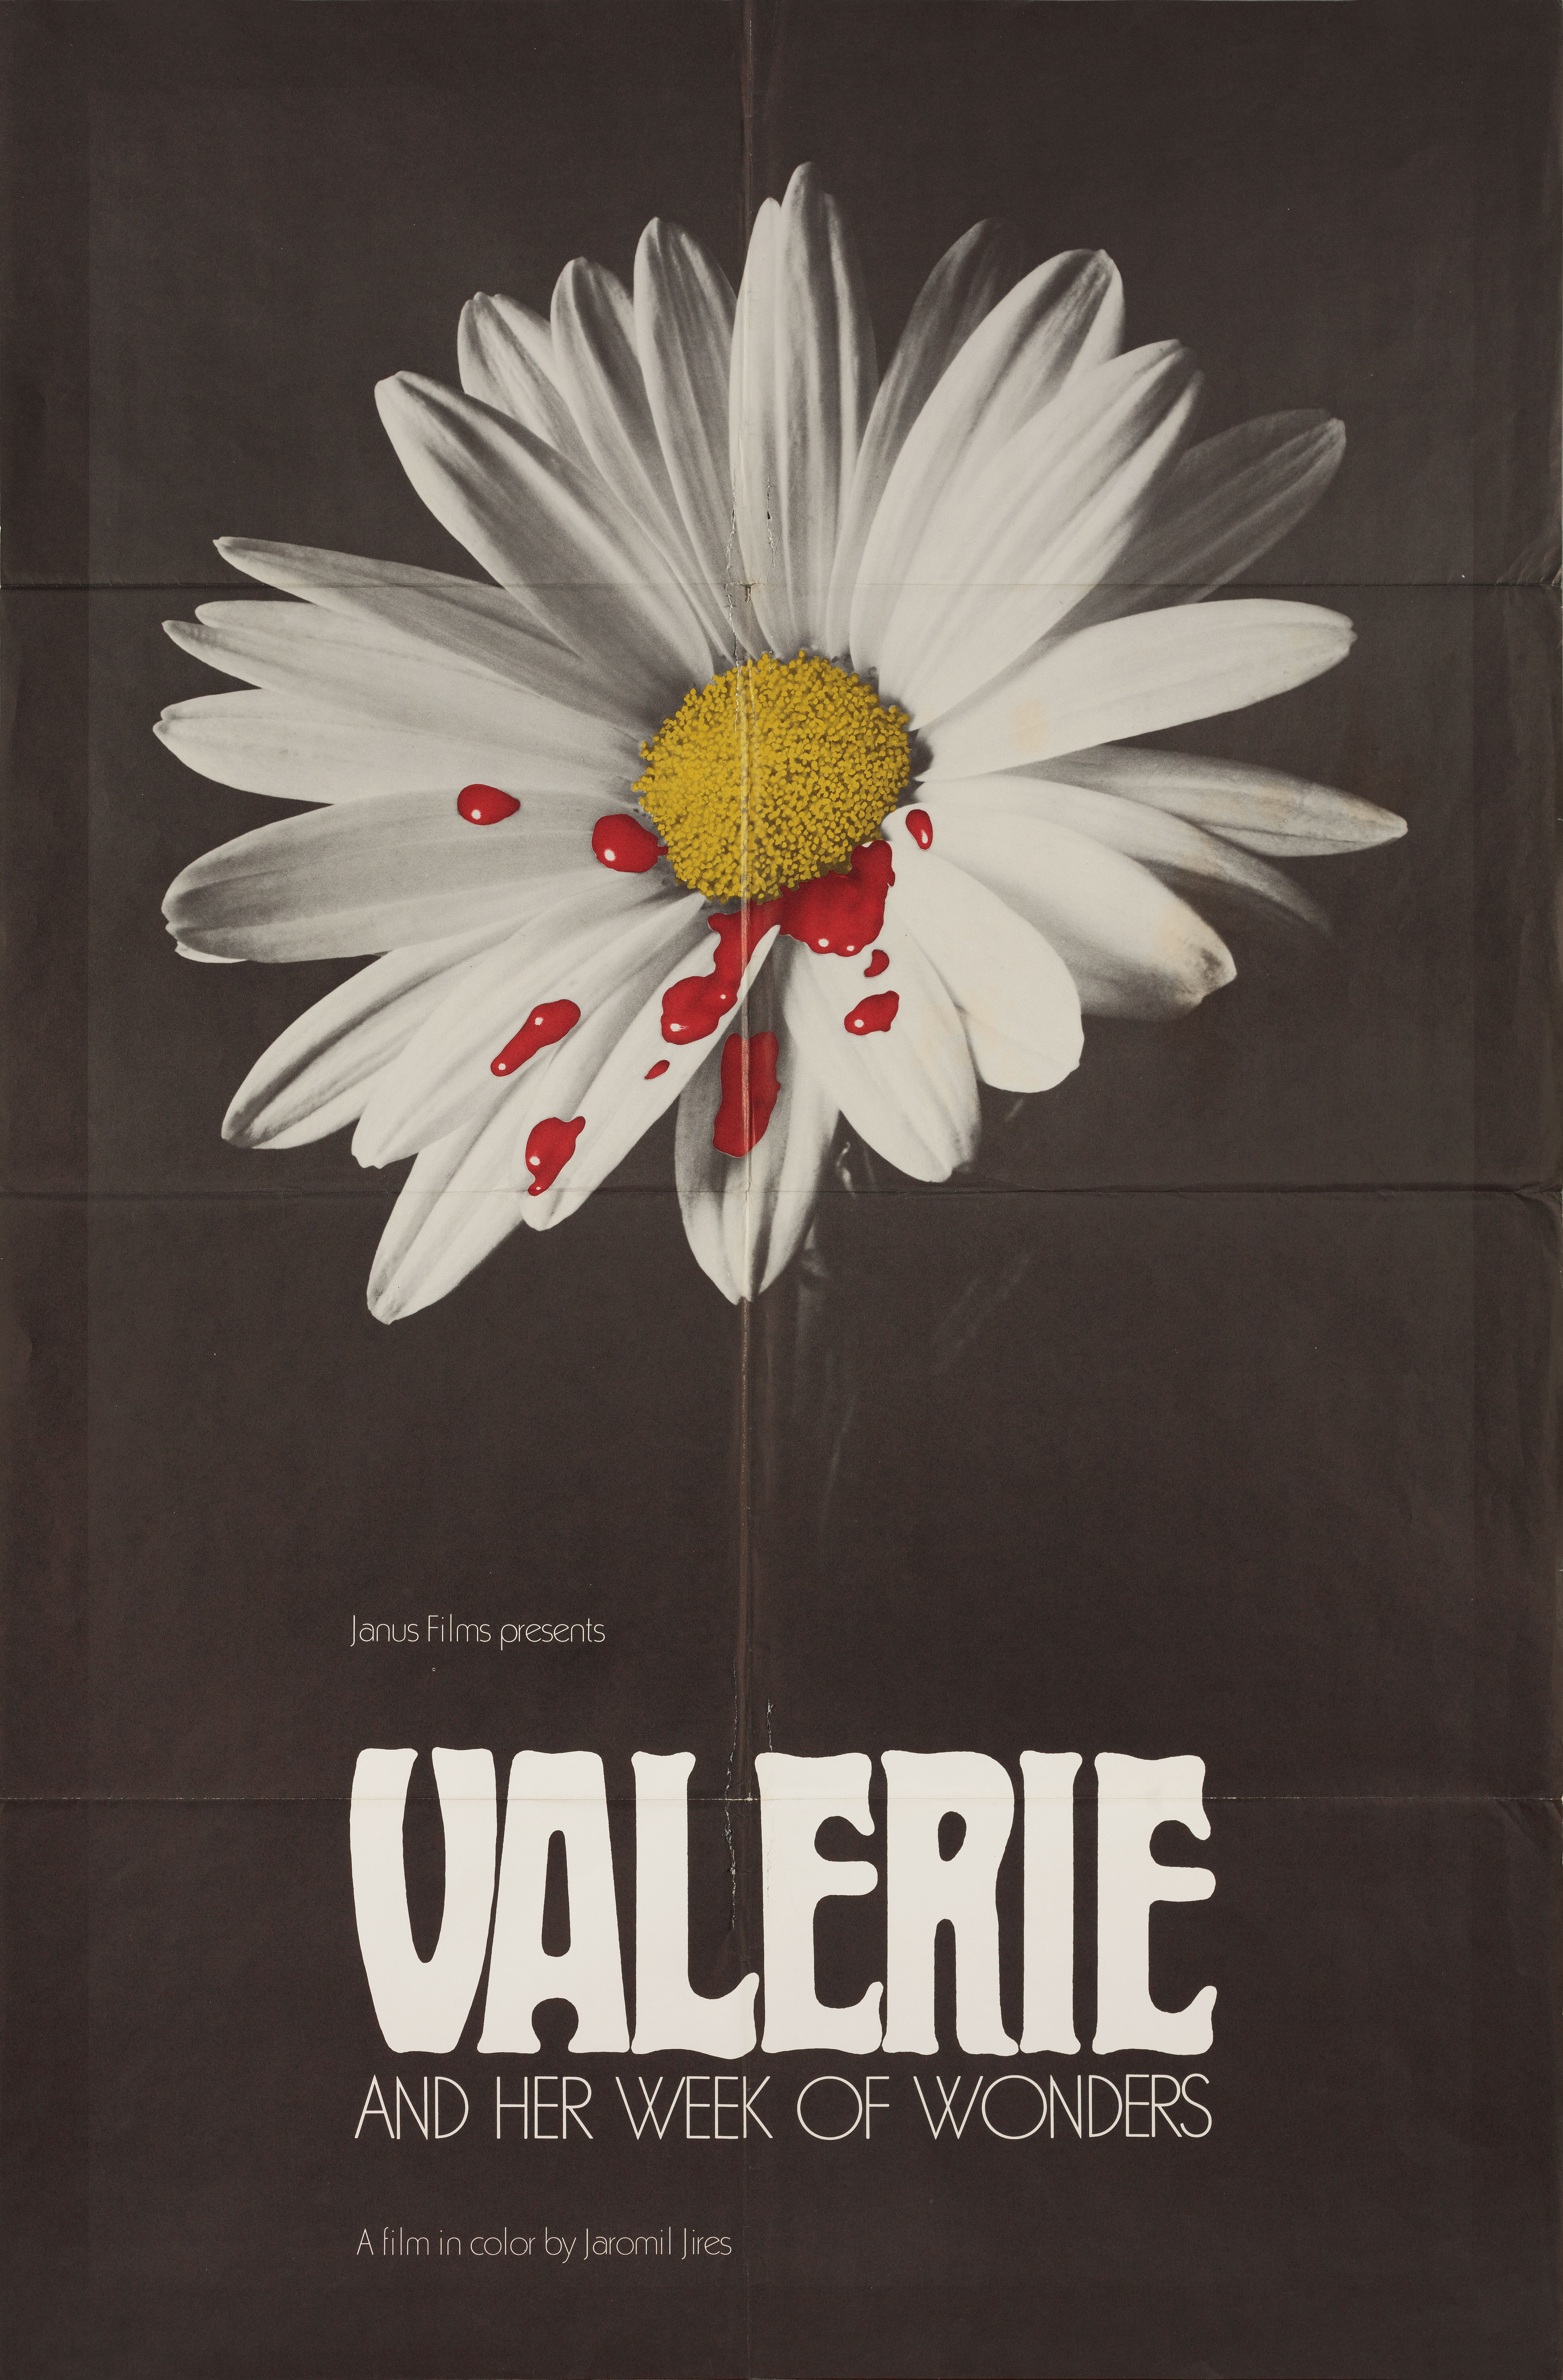 Валерия и неделя чудес (Valerie and Her Week of Wonders, 1970), режиссёр Яромил Жирес, минималистичный постер к фильму (США, 1970 год)